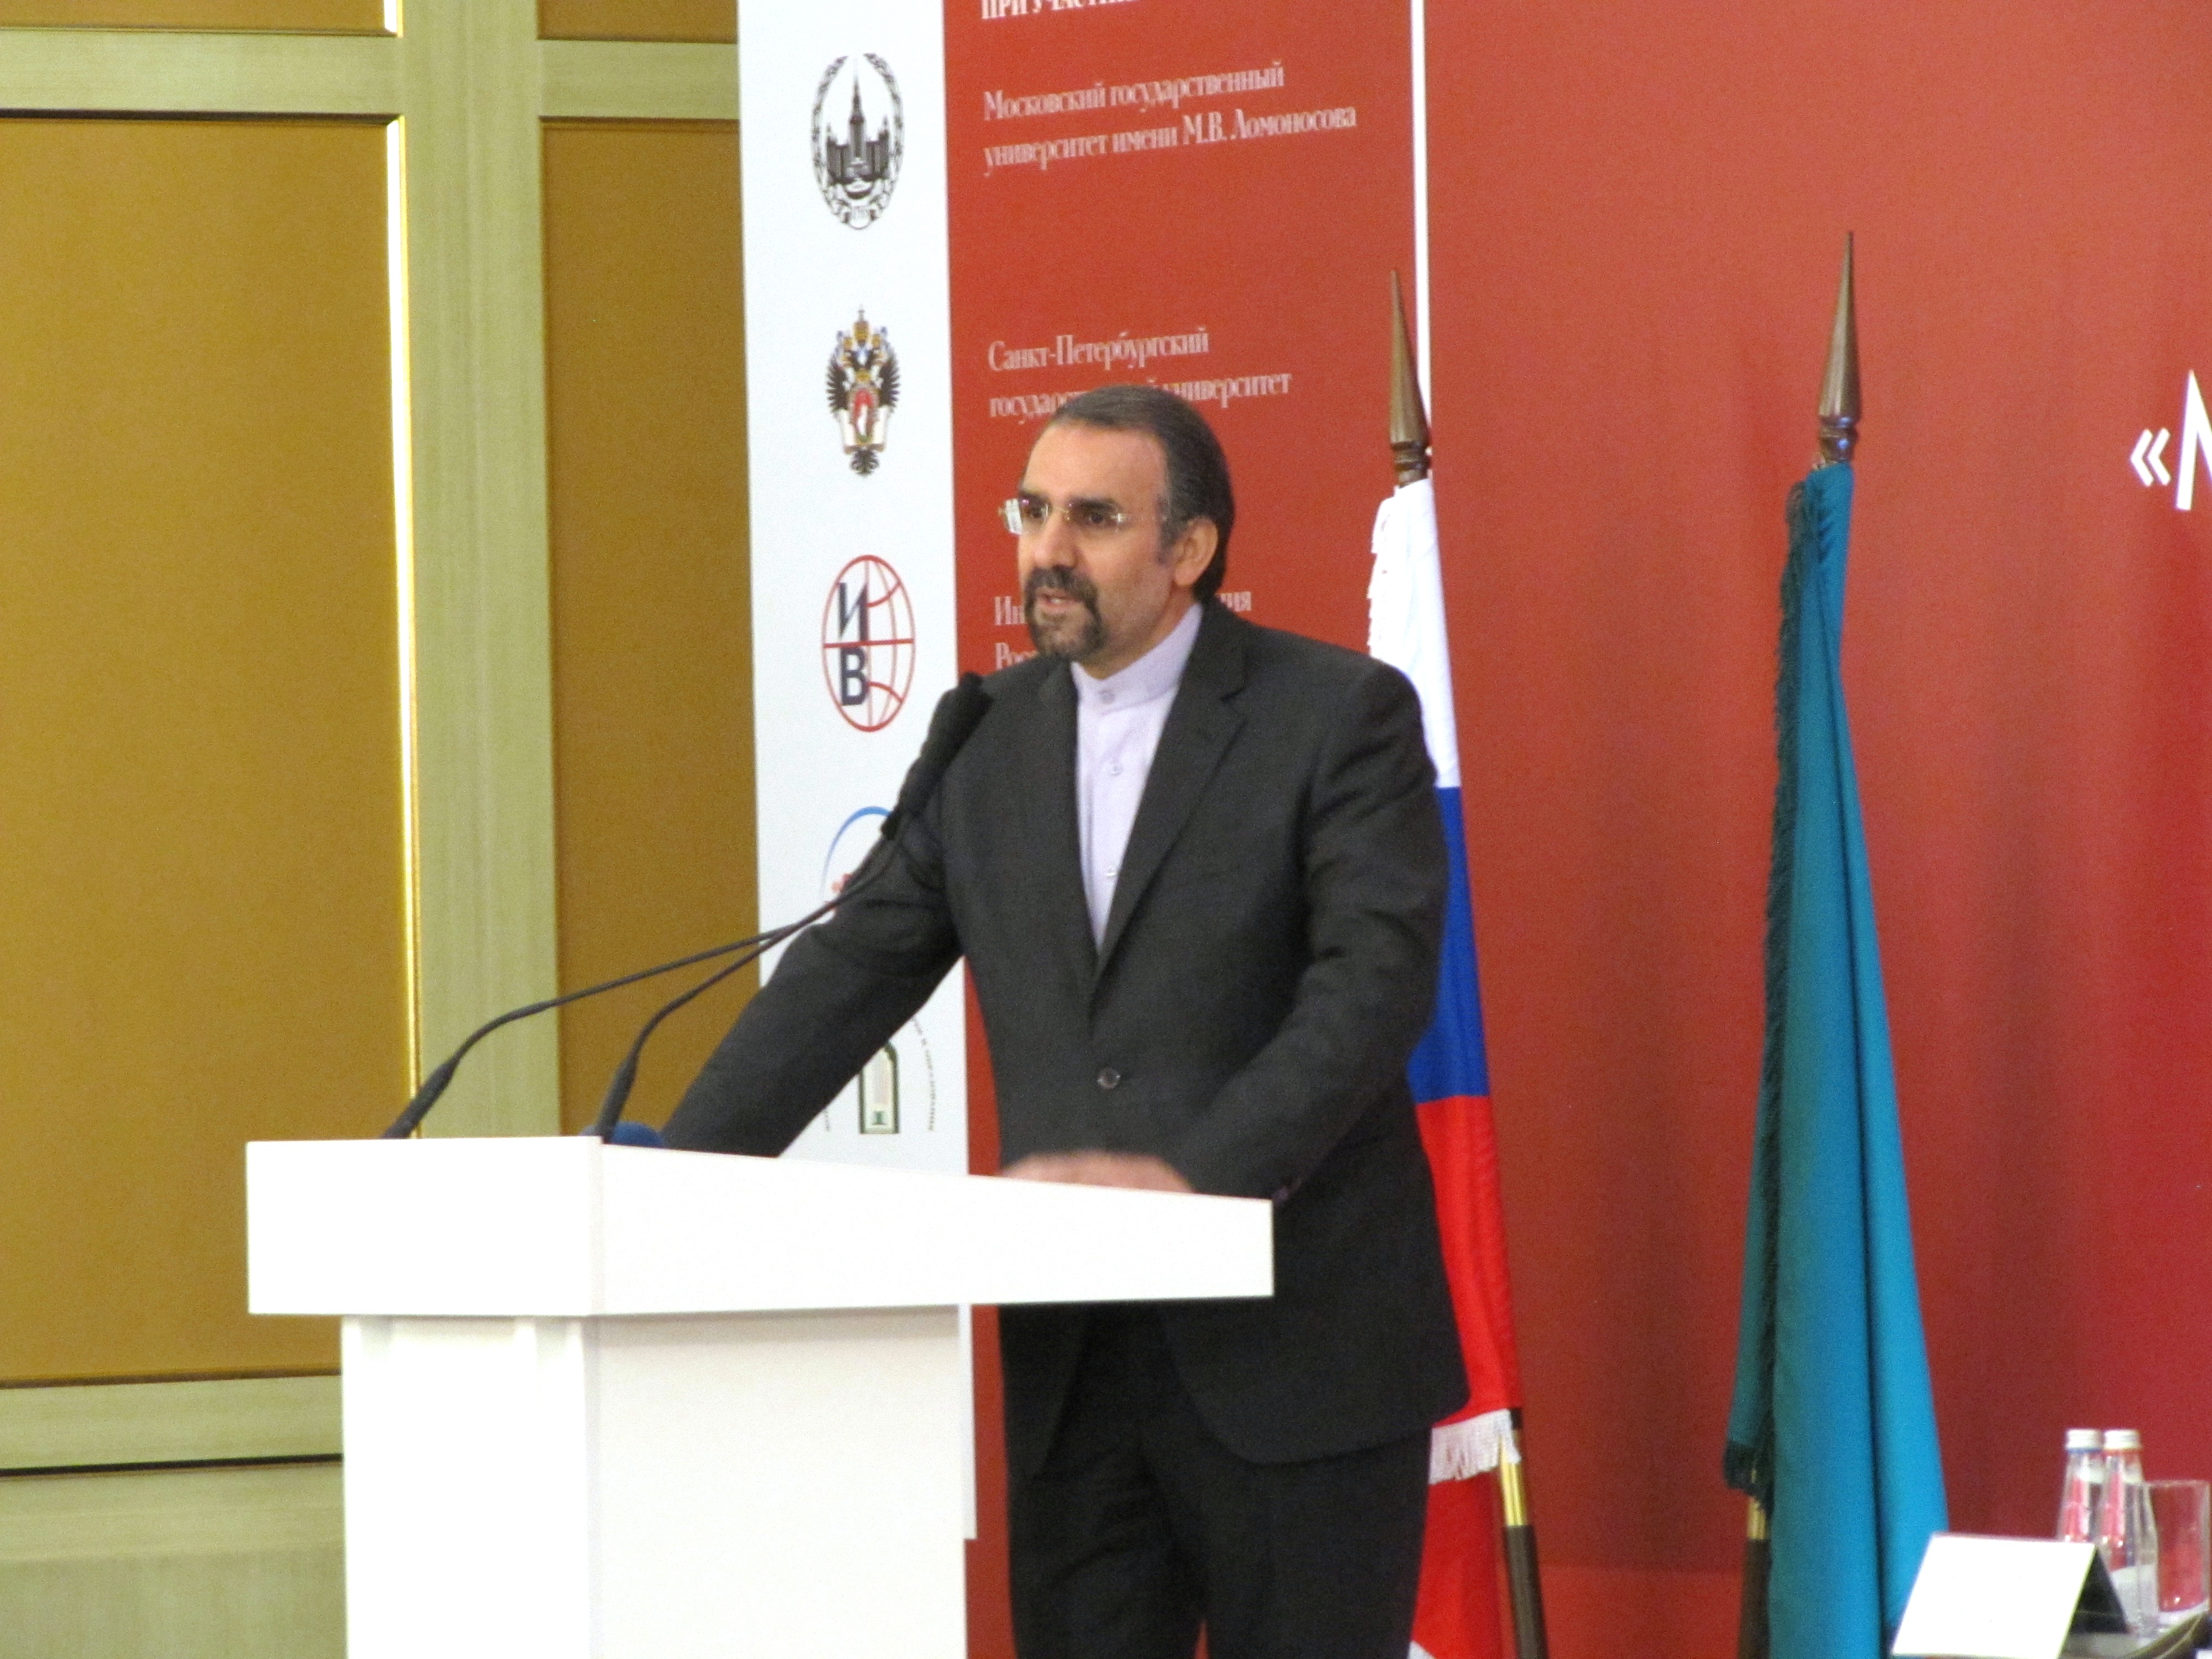 Ambassador of Iran Mehdi Sanai